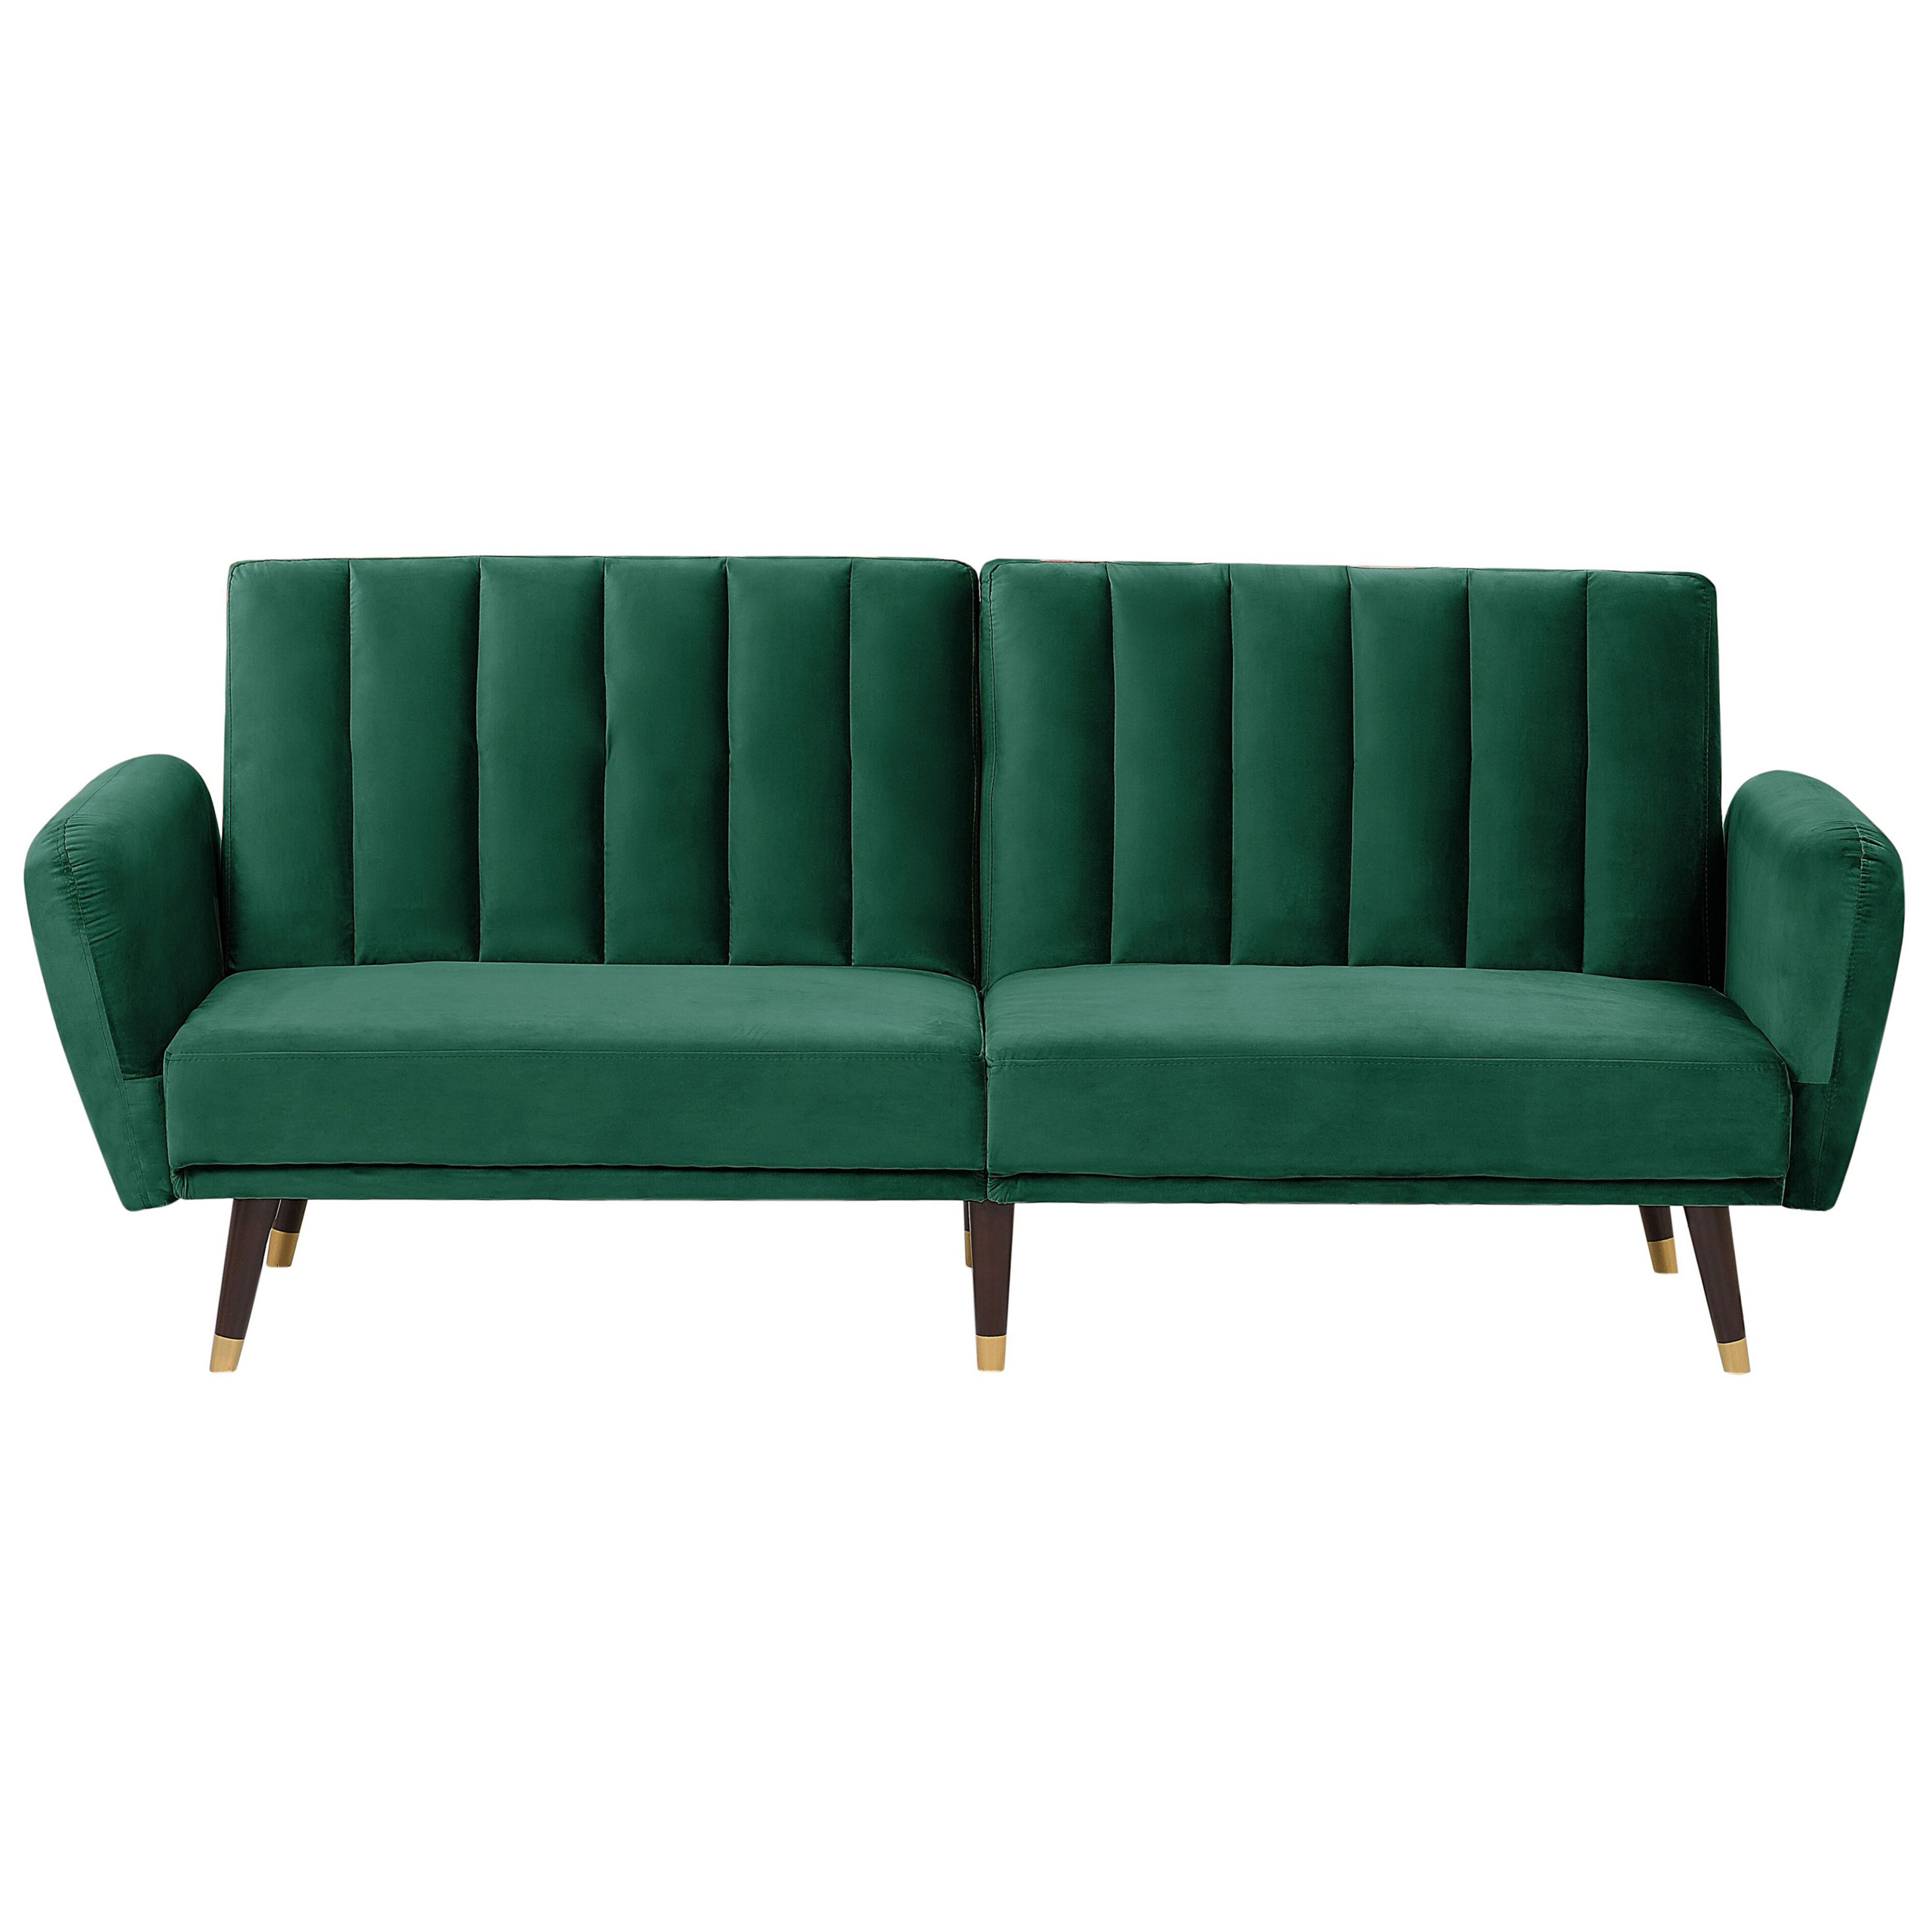 Beliani Sofa Bed Green Sleeper Convertible Velvet Upholstery Elegant Glam Modern Living Room Bedroom